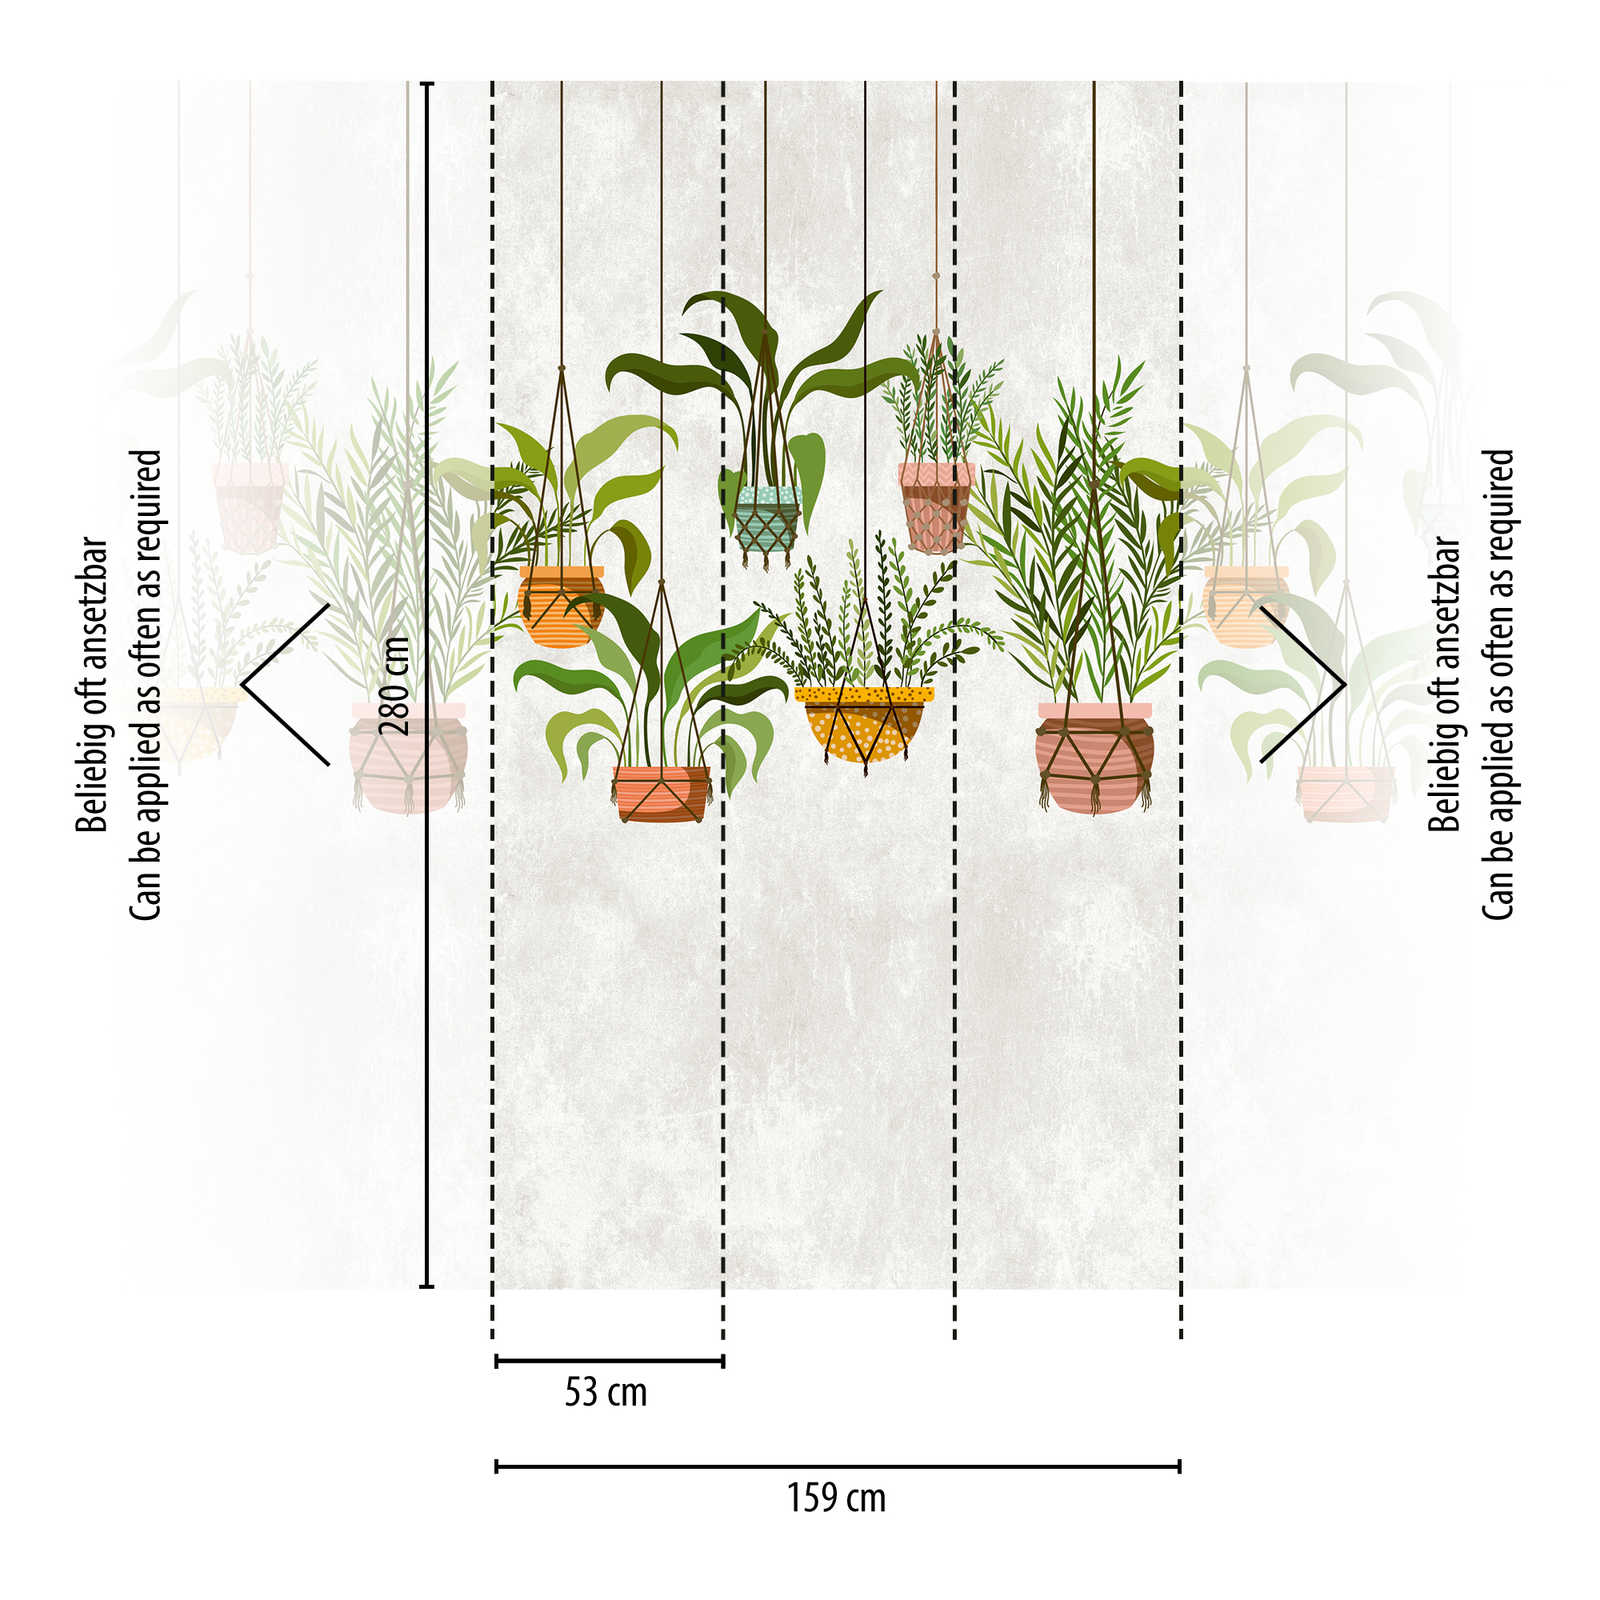             behangpapier nieuwigheid | motief behang opknoping planten botanische decor
        